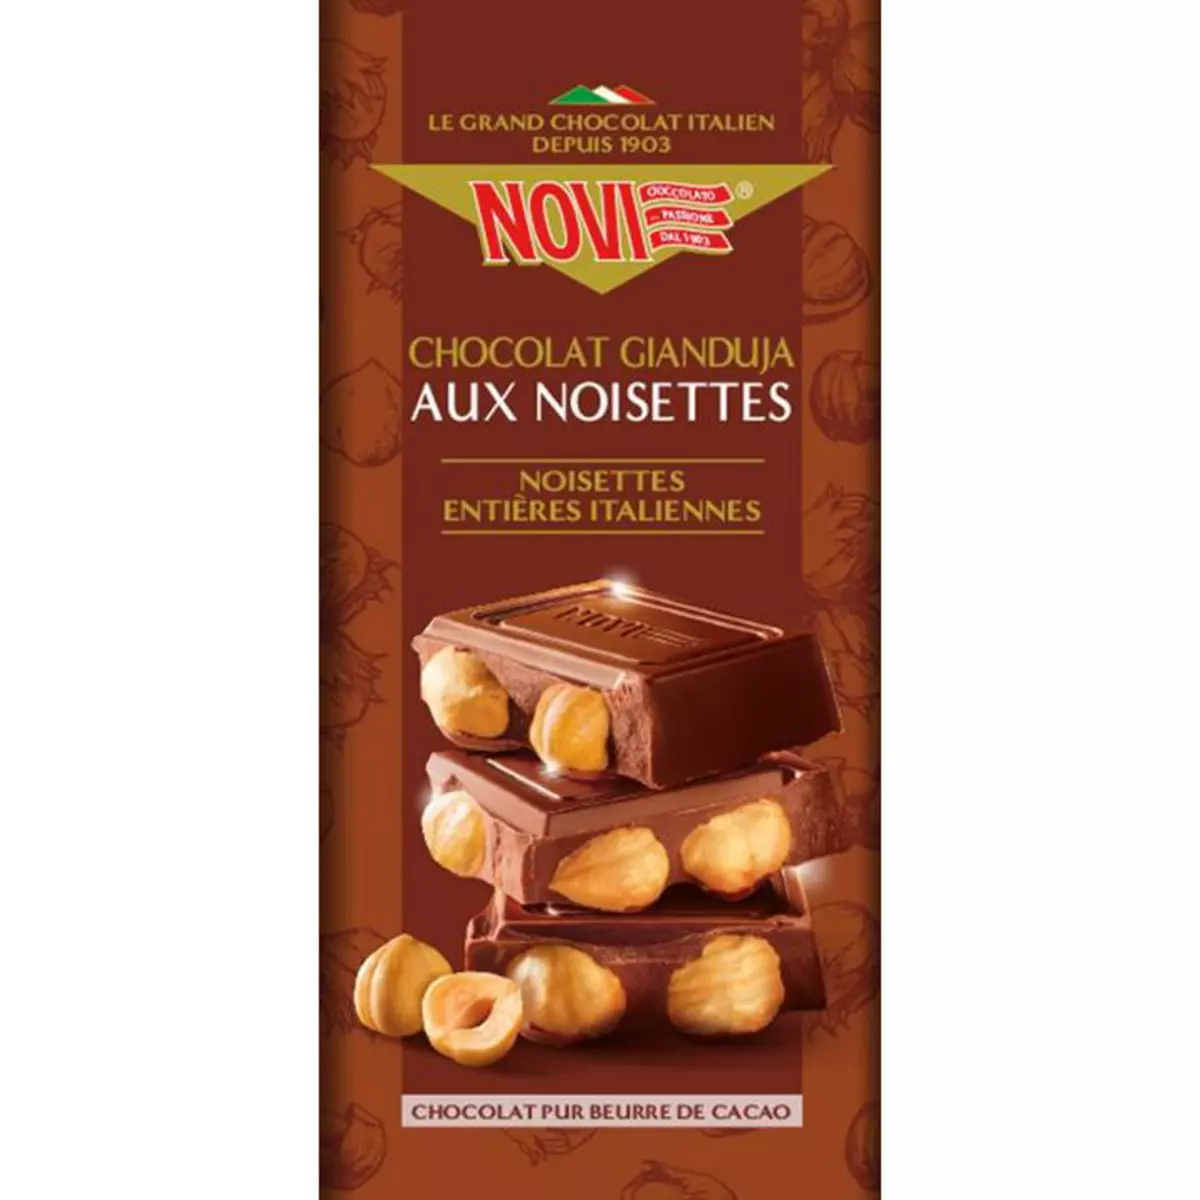 NOVI Tablette de chocolat Gianduja et aux noisettes 1 pièce 130g